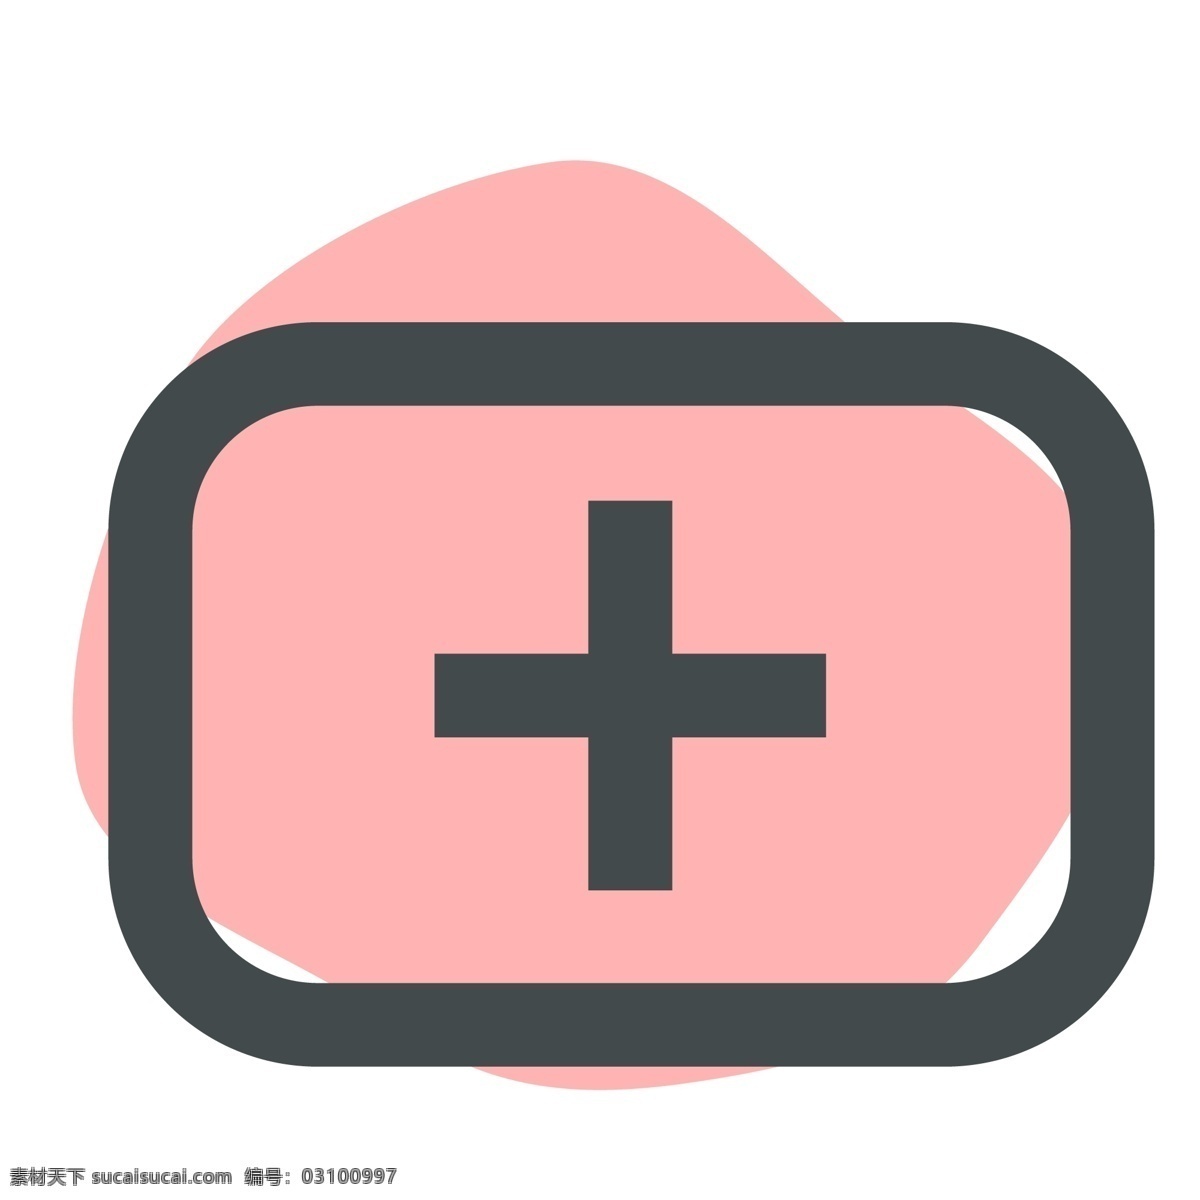 粉色 医疗 图标 标志 手机图标 智能图标 教育图标 办公图标 网页图标 彩色图标